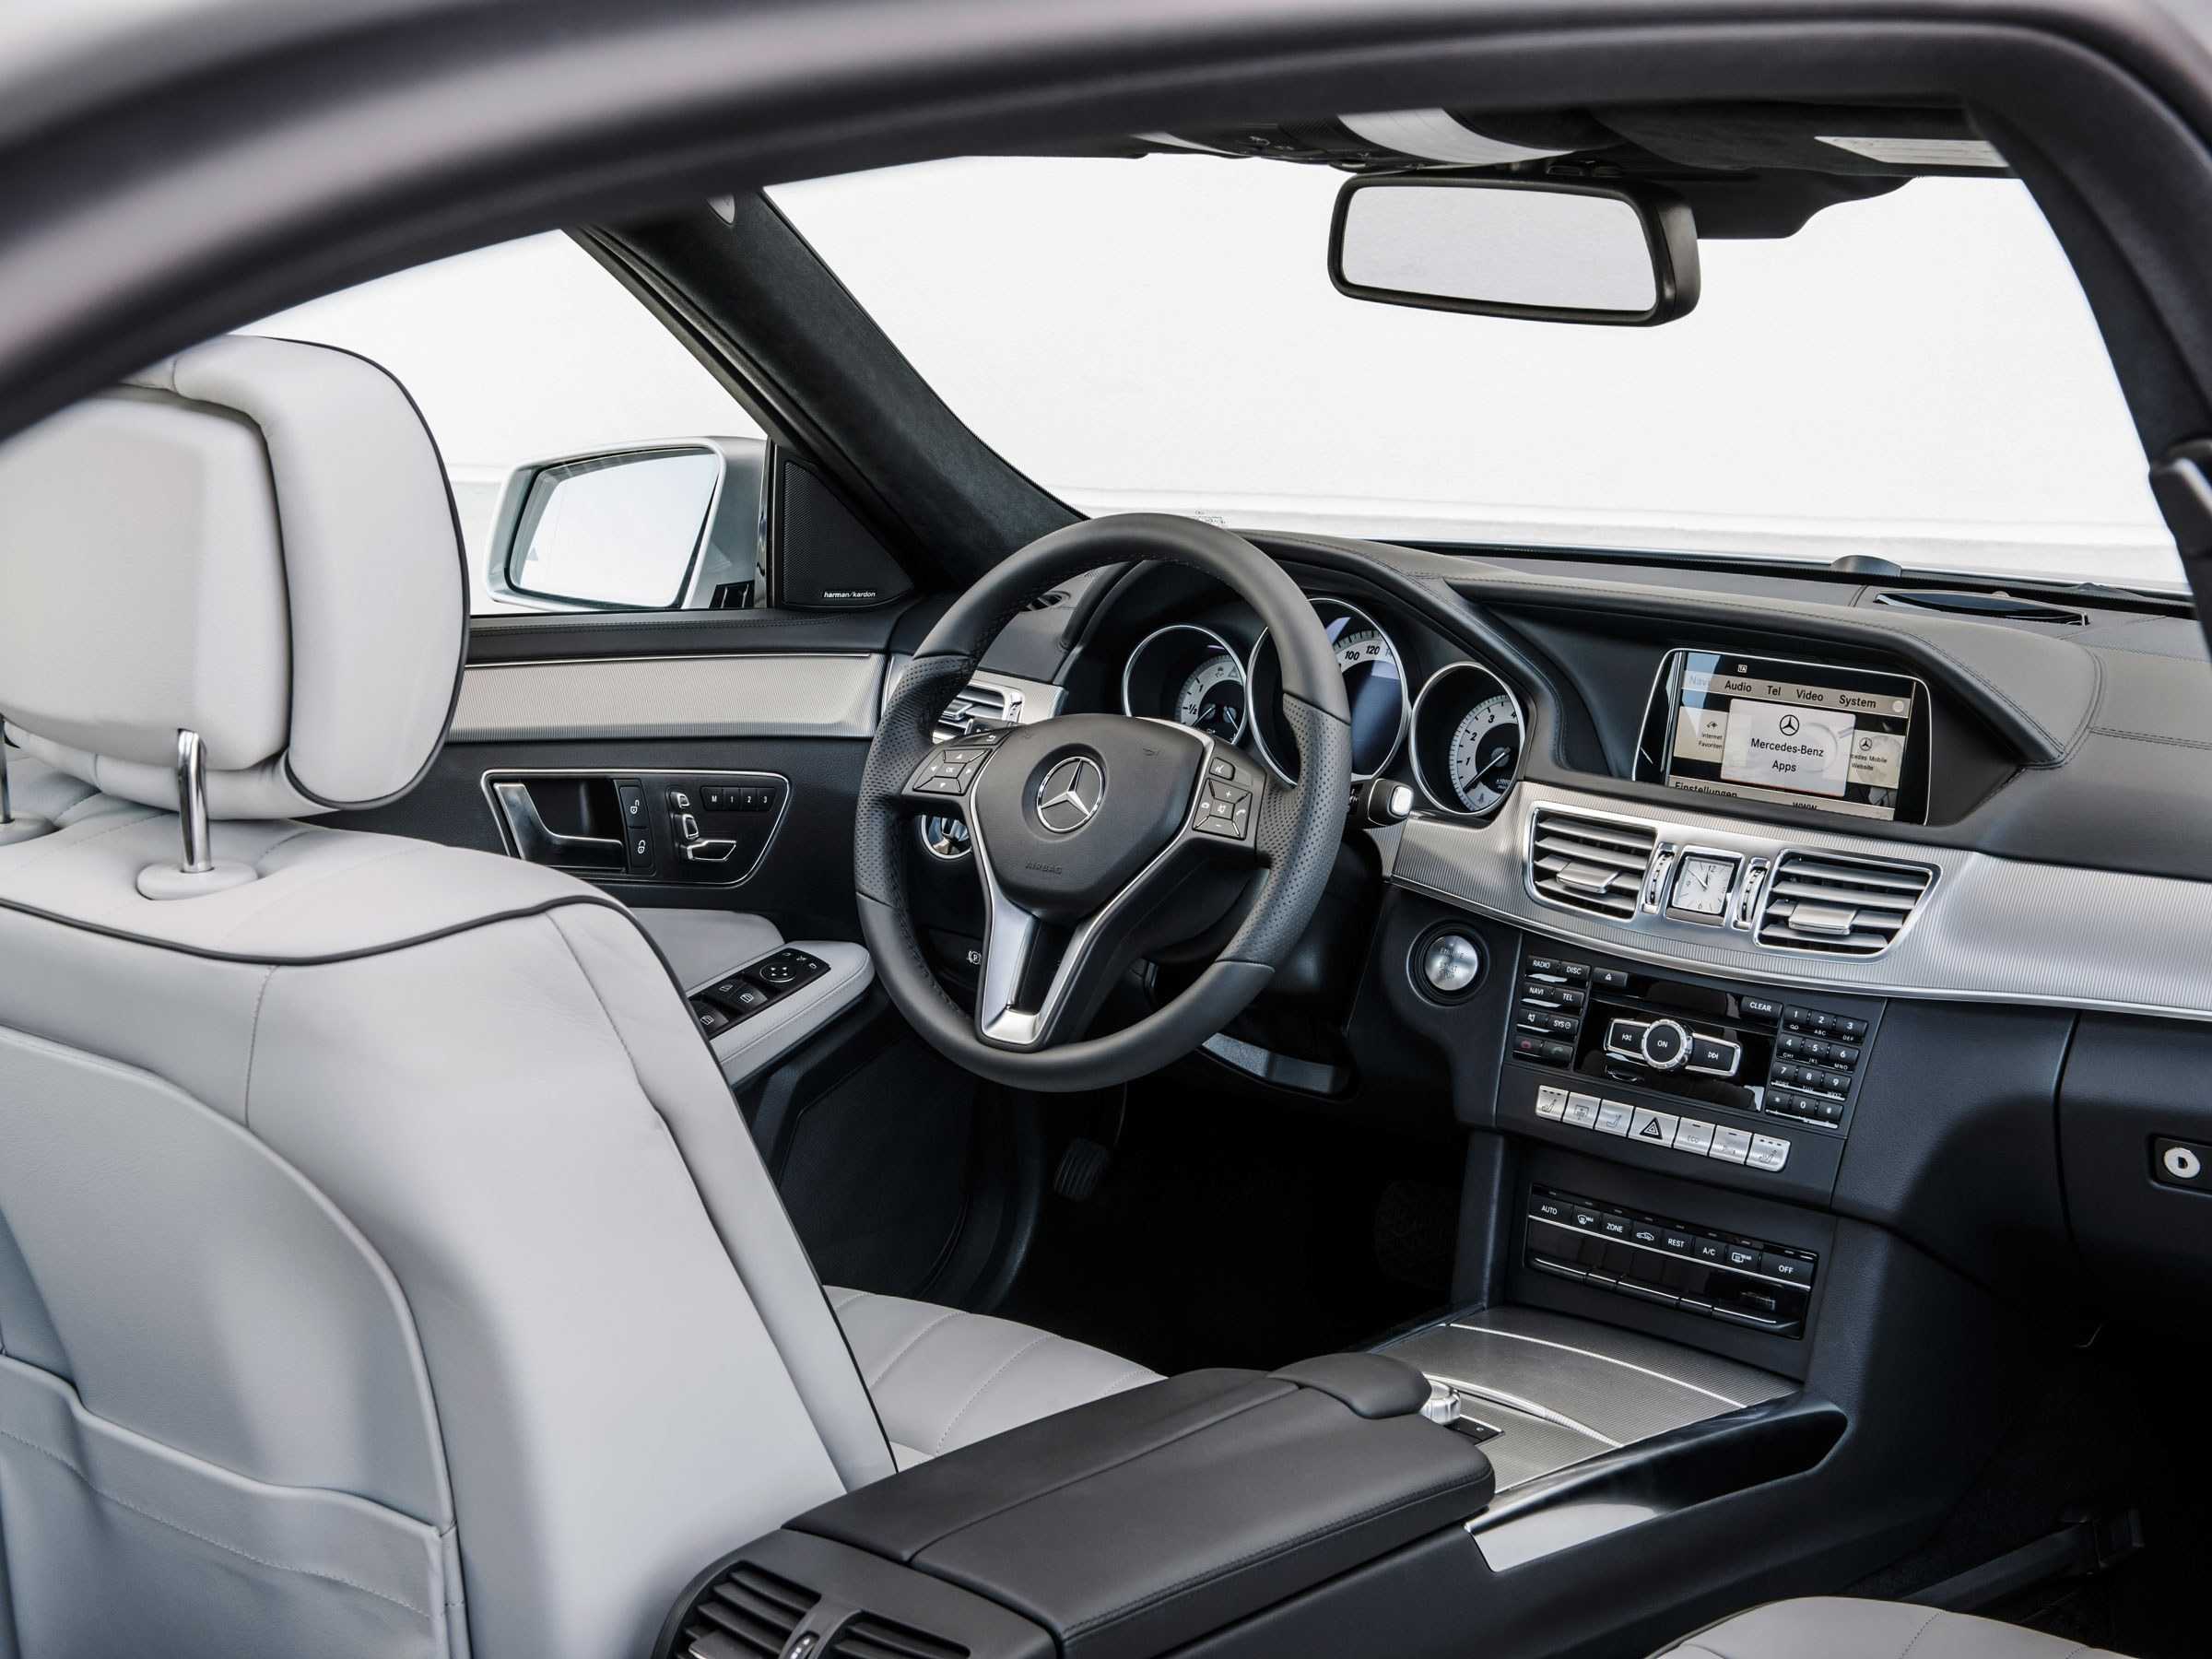 Mercedes-benz gla 2020 больше чем кажется! подробно о главном - major auto - новости